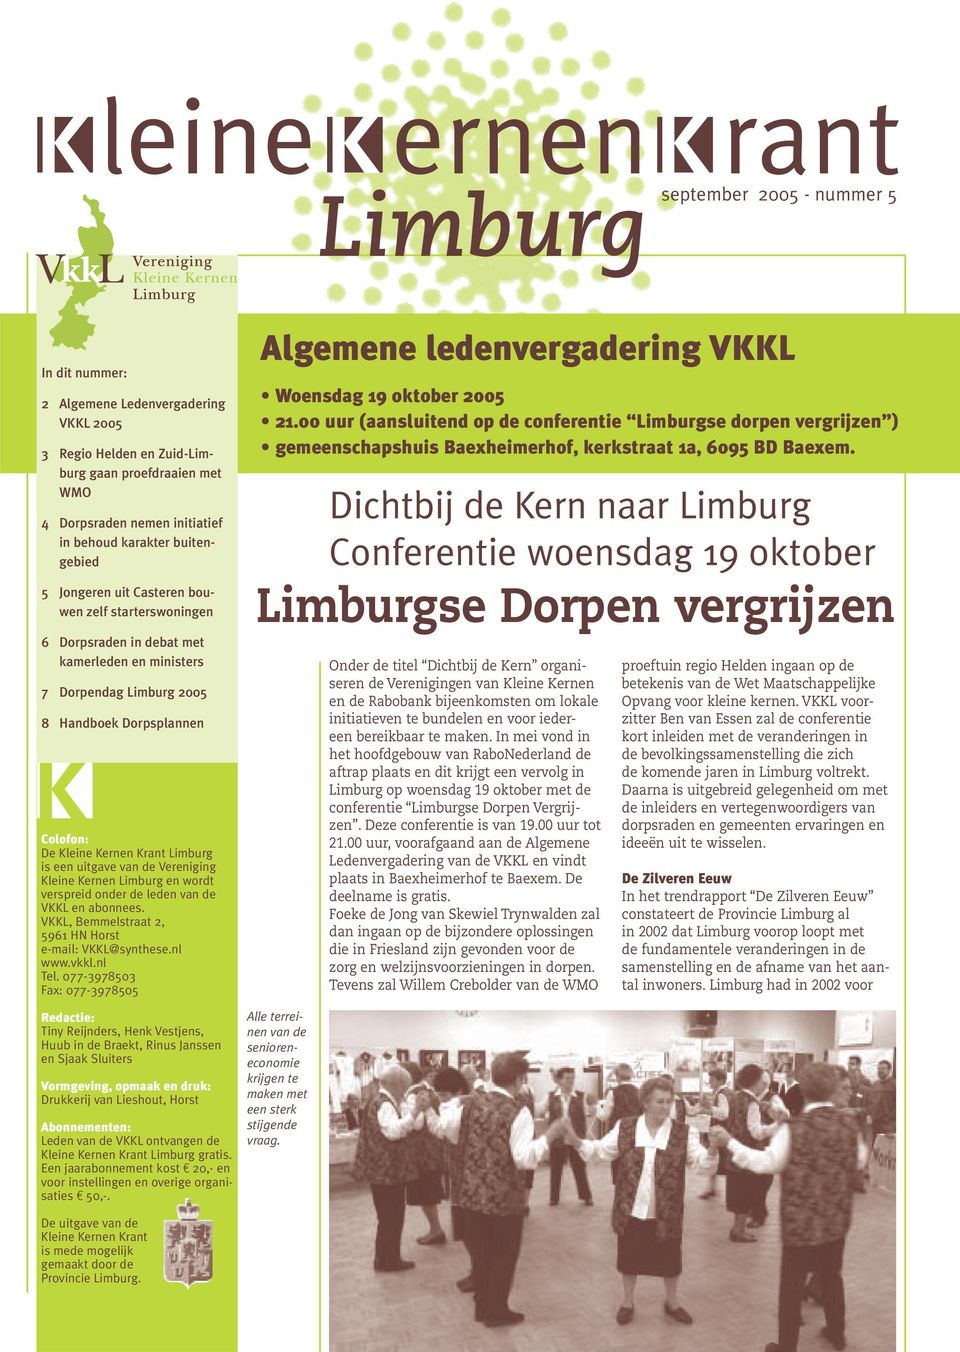 Kleine Kernen Krant Limburg is een uitgave van de Vereniging Kleine Kernen Limburg en wordt verspreid onder de leden van de VKKL en abonnees. VKKL, Bemmelstraat 2, 5961 HN Horst e-mail: VKKL@synthese.